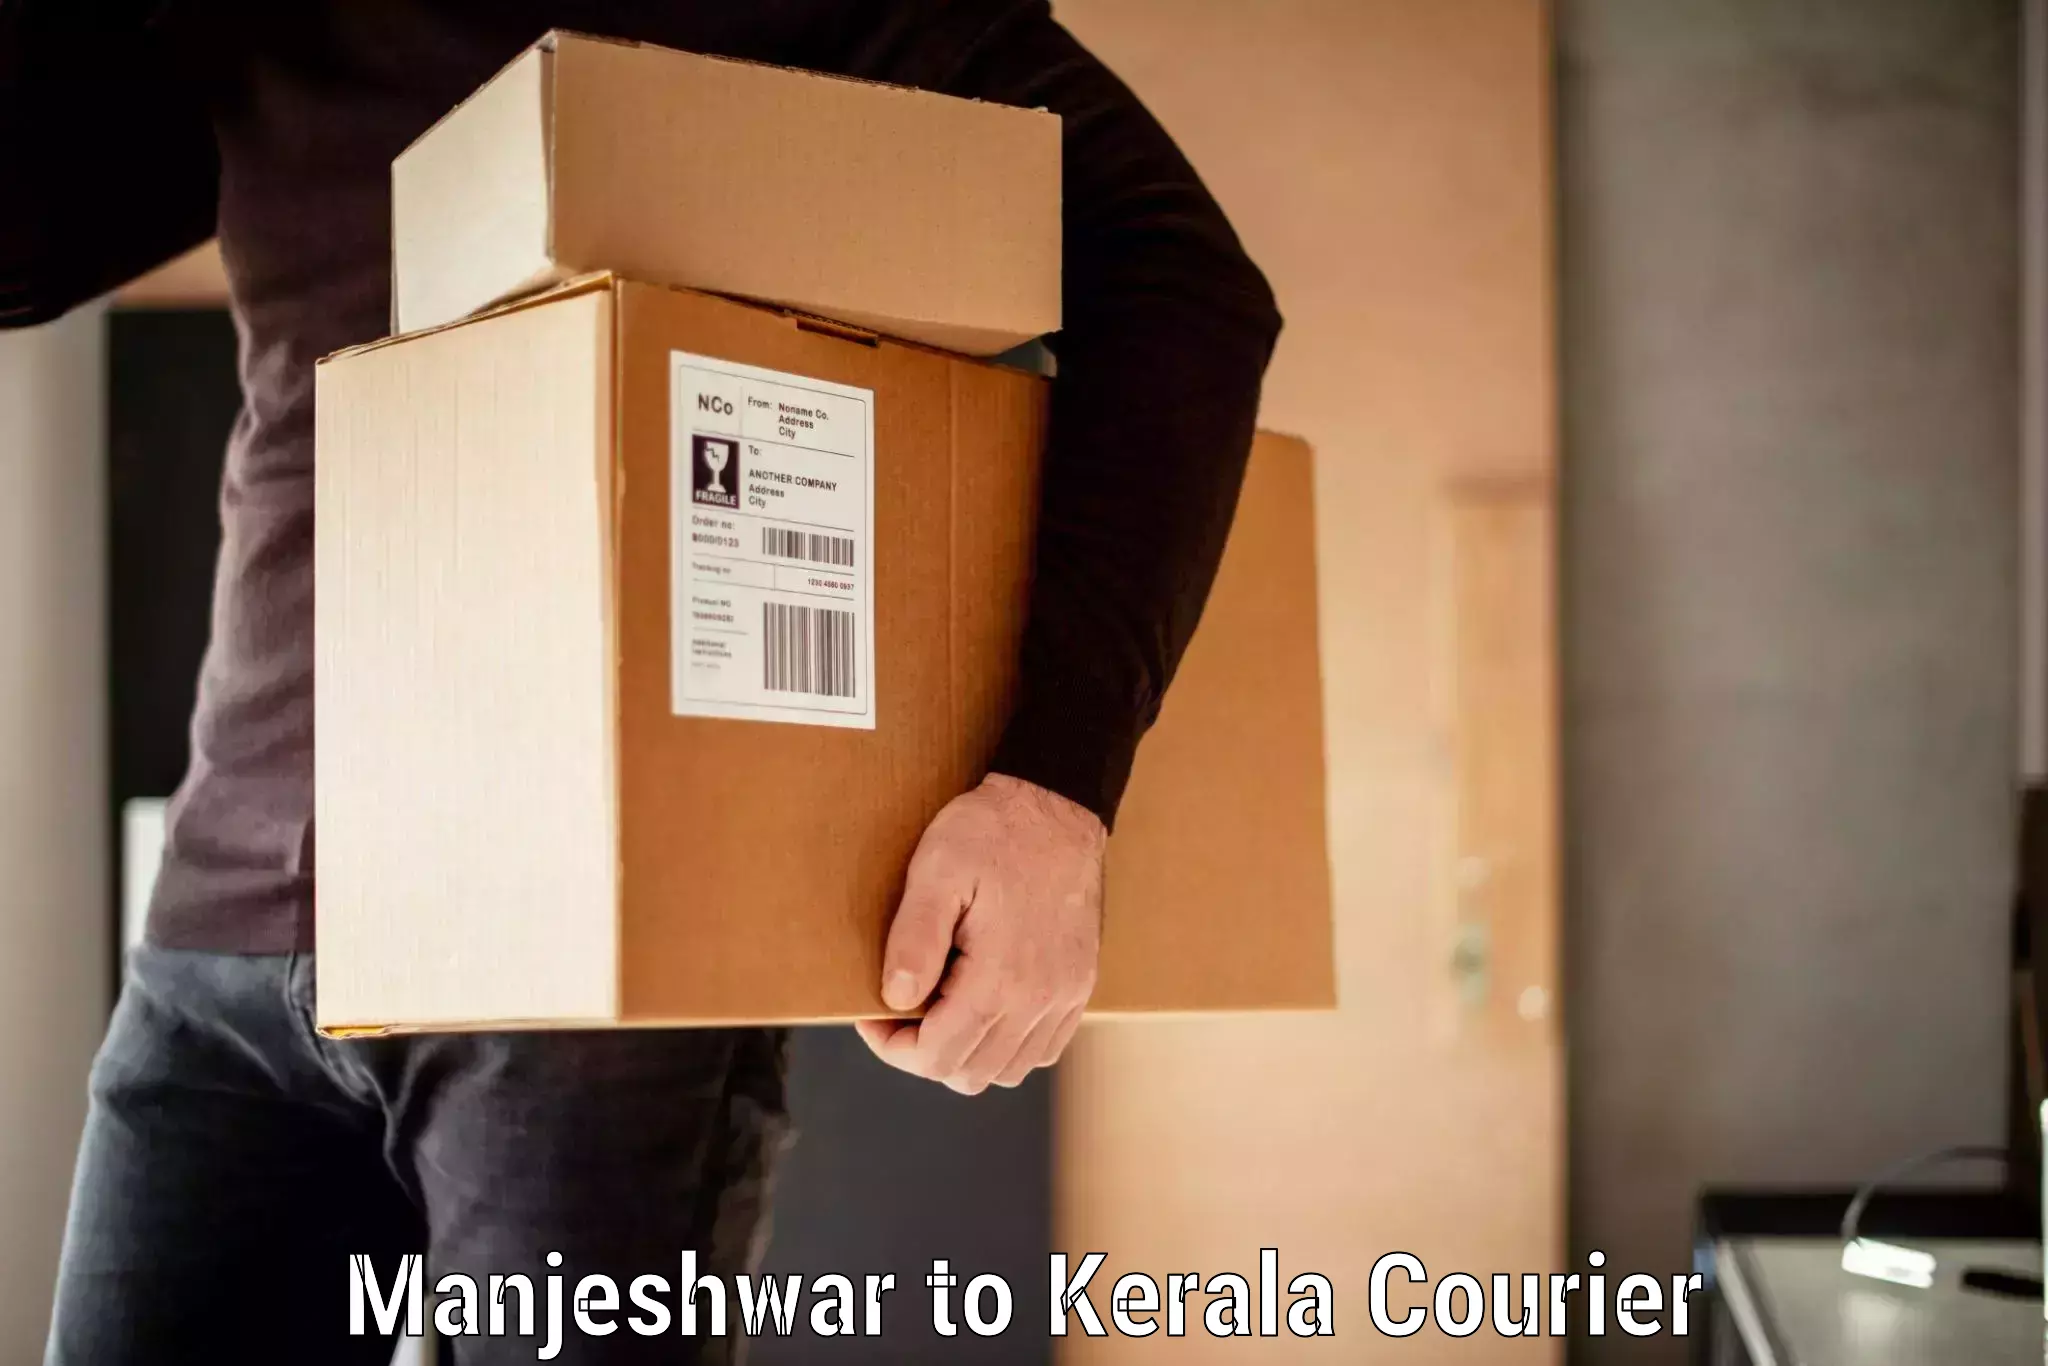 Baggage transport professionals Manjeshwar to Kerala